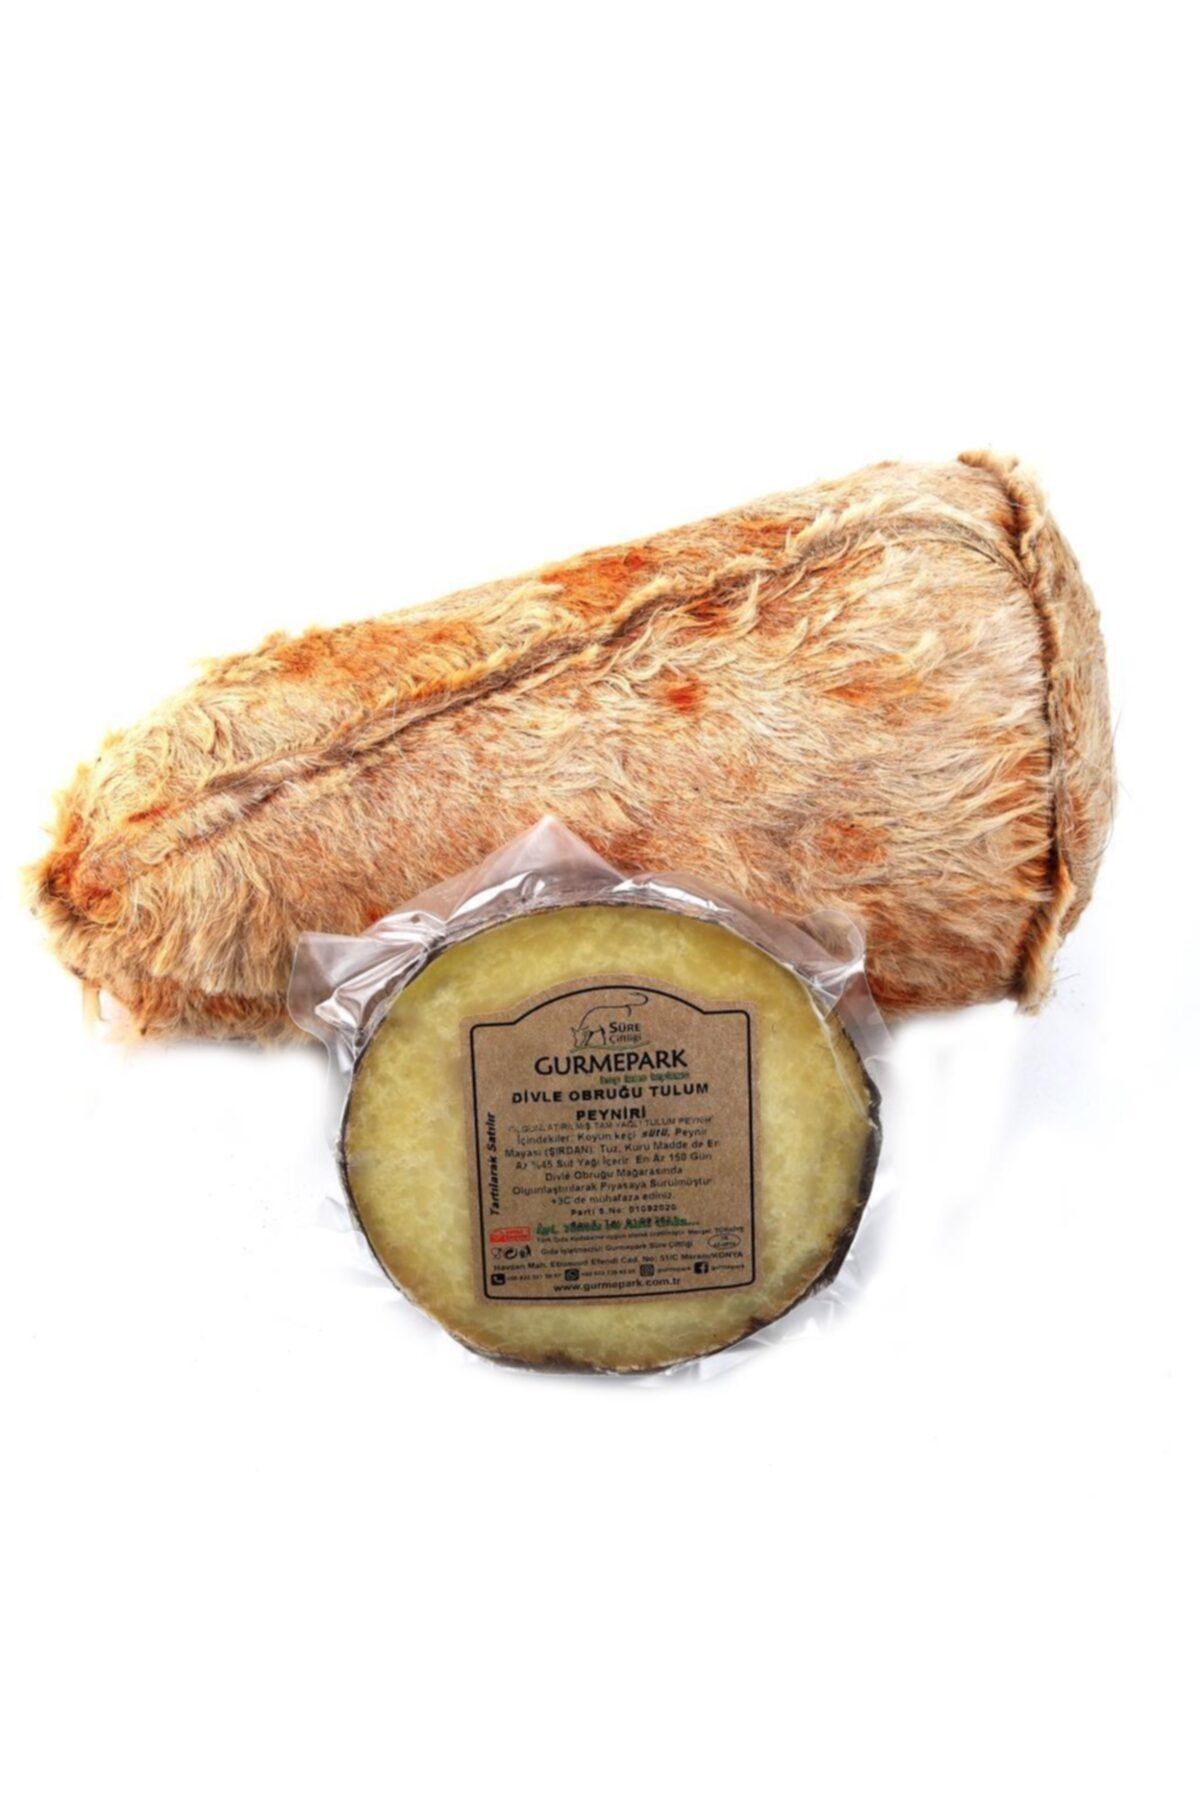 Gurmepark Karaman Yeni Sezon Divle Obruk Tulum Peyniri Tüm 2.3 - 2.7 kg +Bez Tulum Peyniri Hediye